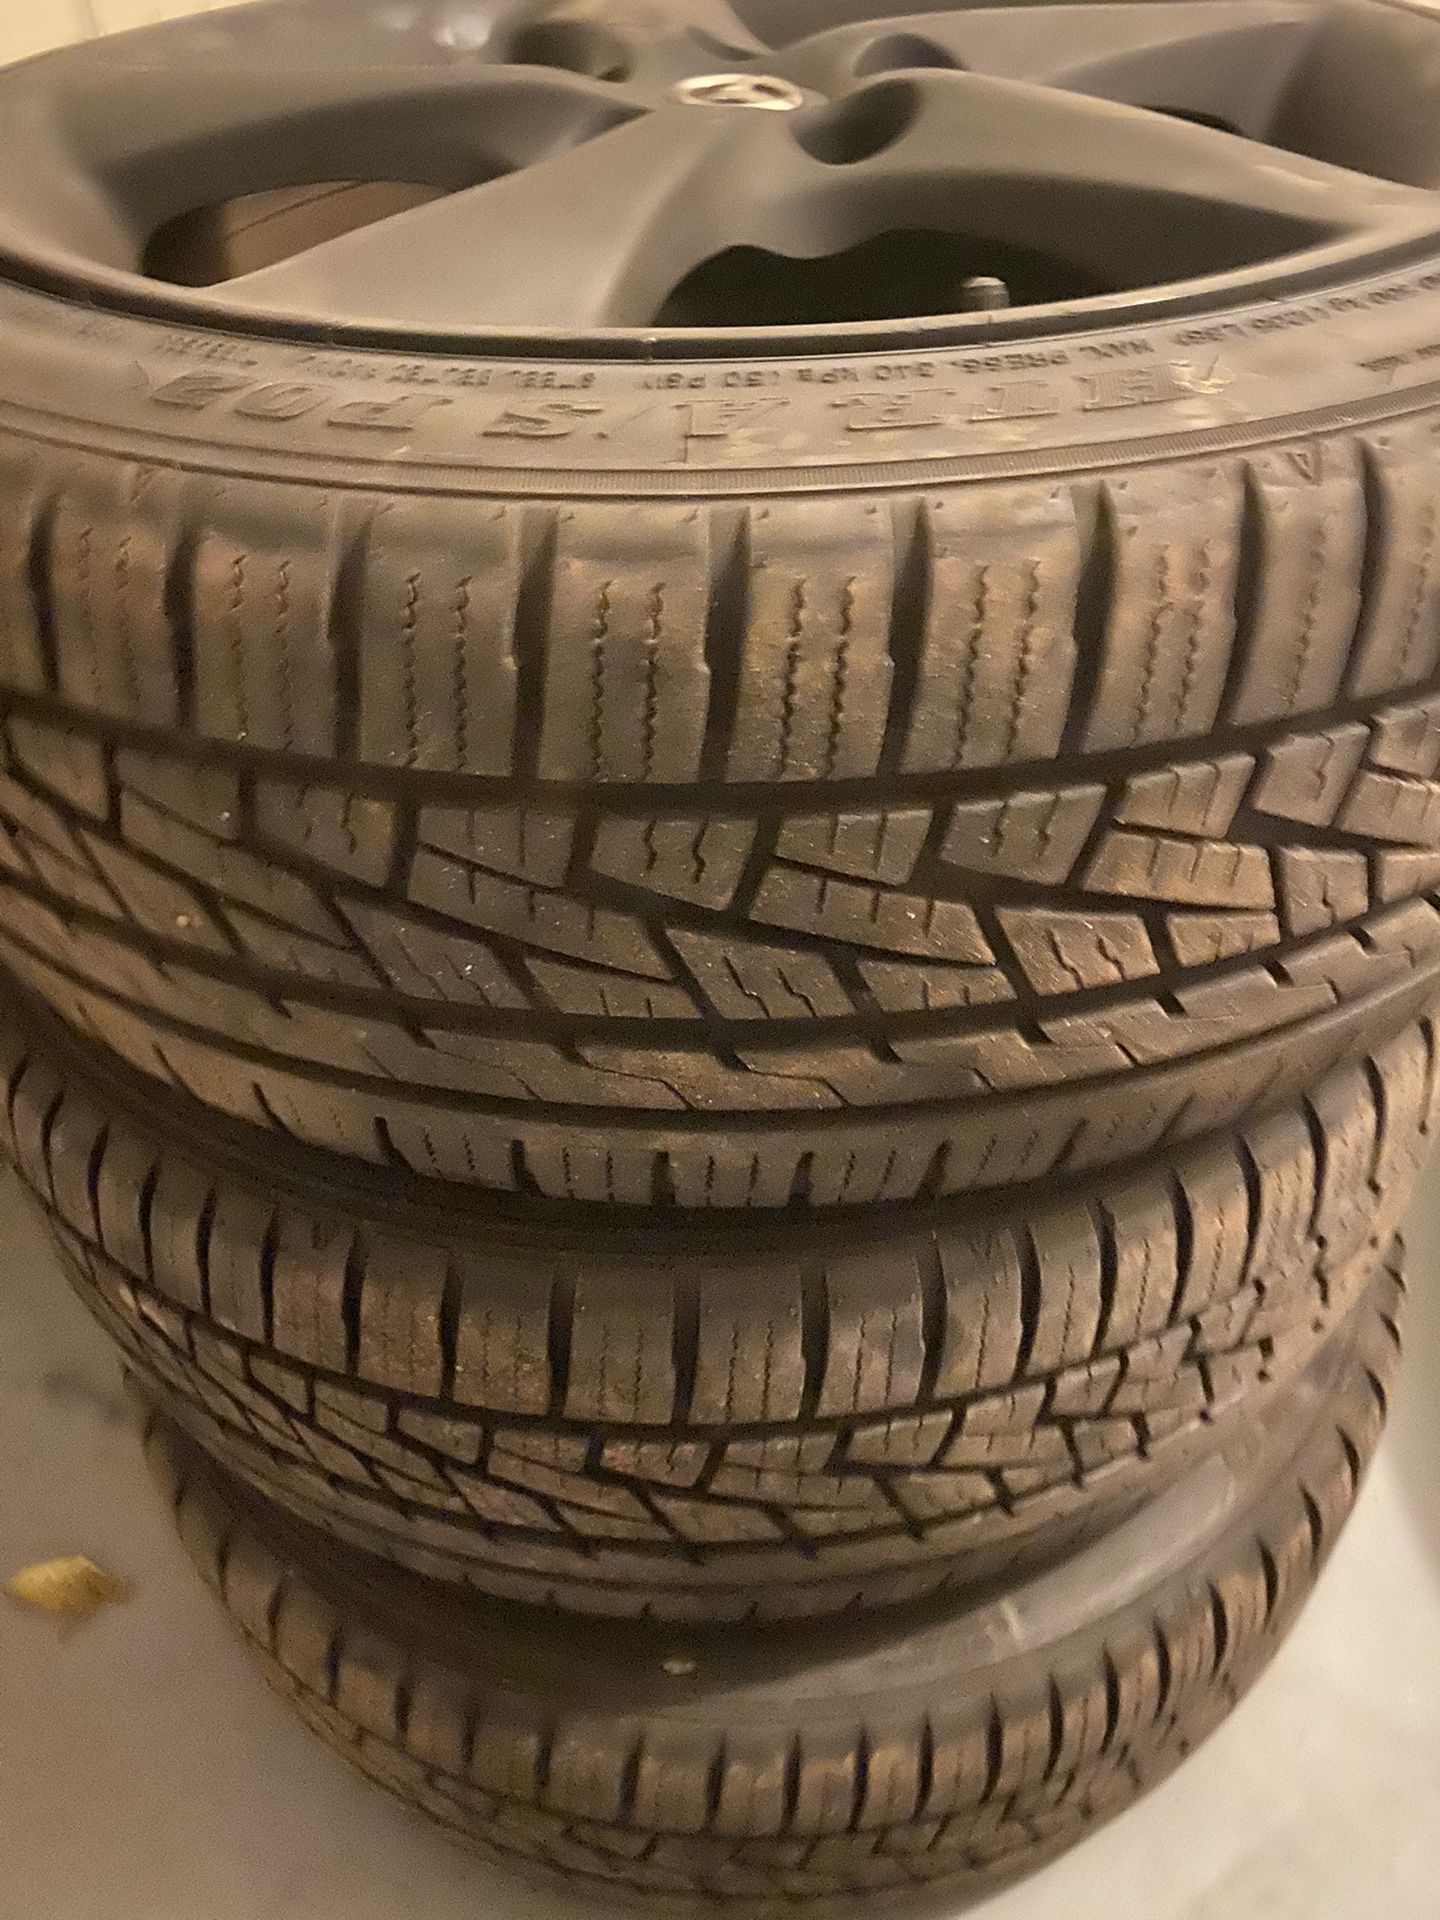 mazda 6 rims have new tires